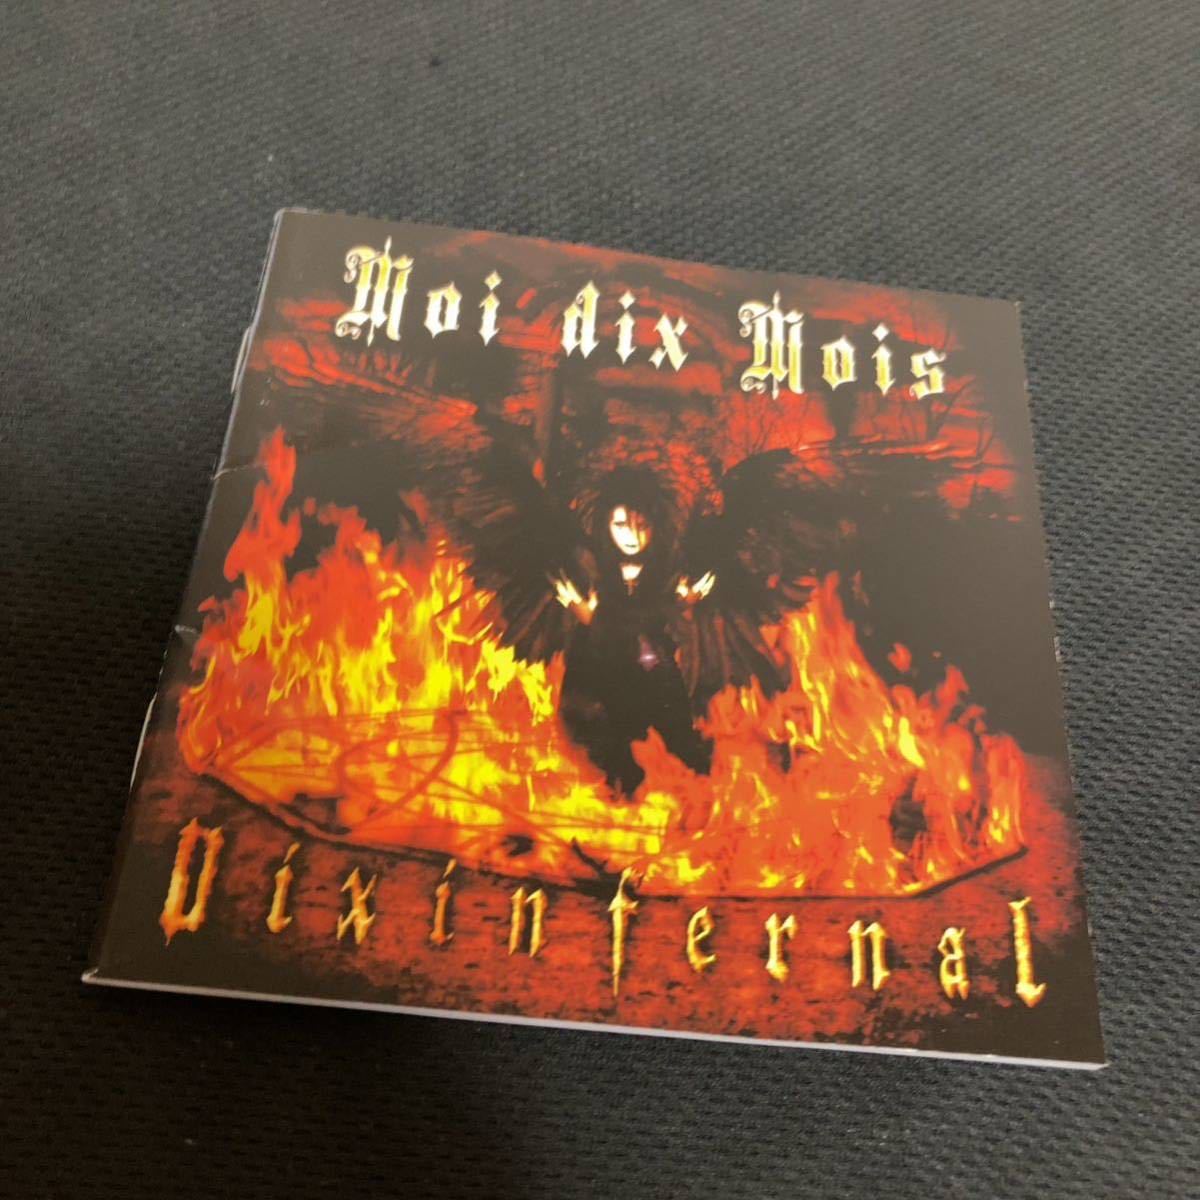 ●H826) Moi dix Mois / Dix infernal アルバム _画像4